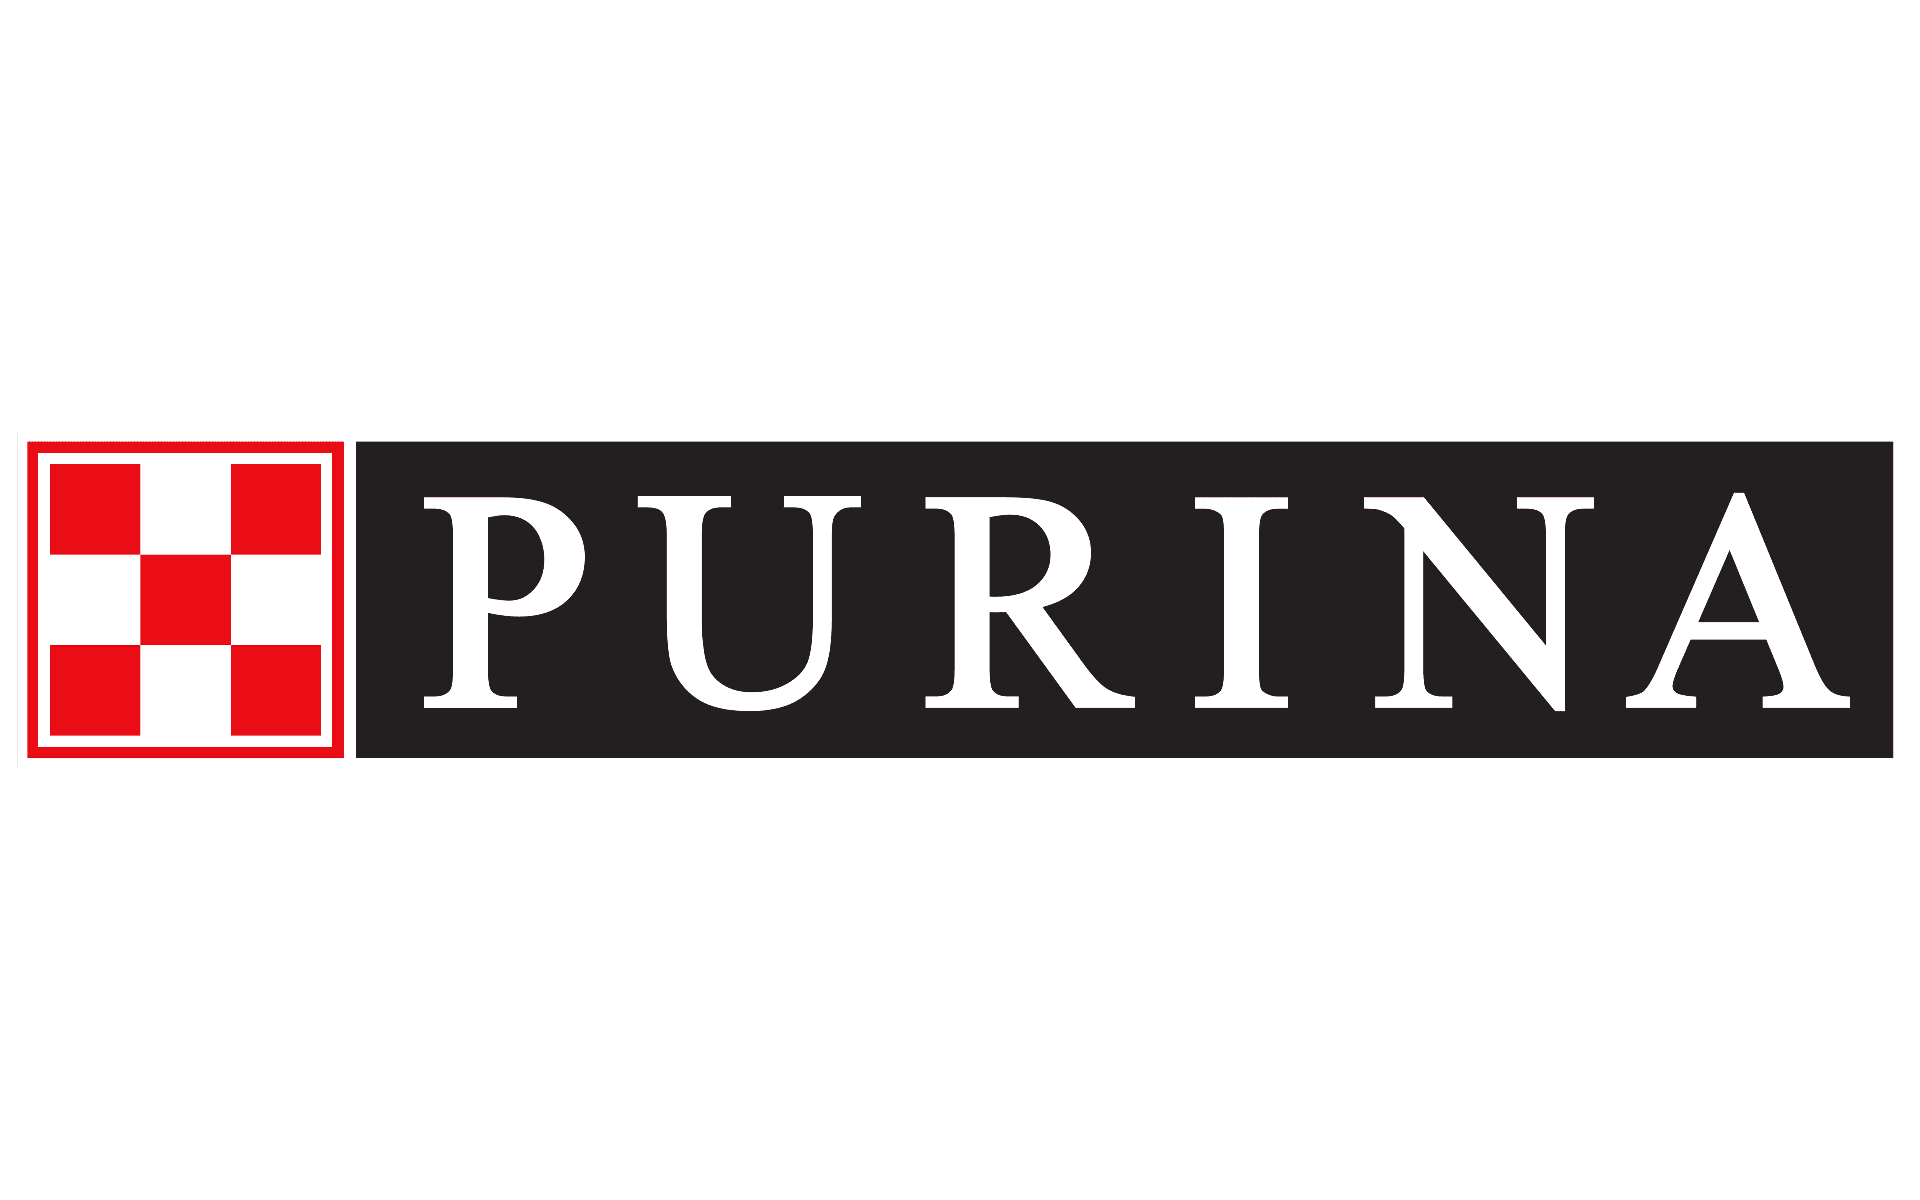 Brand: Purina